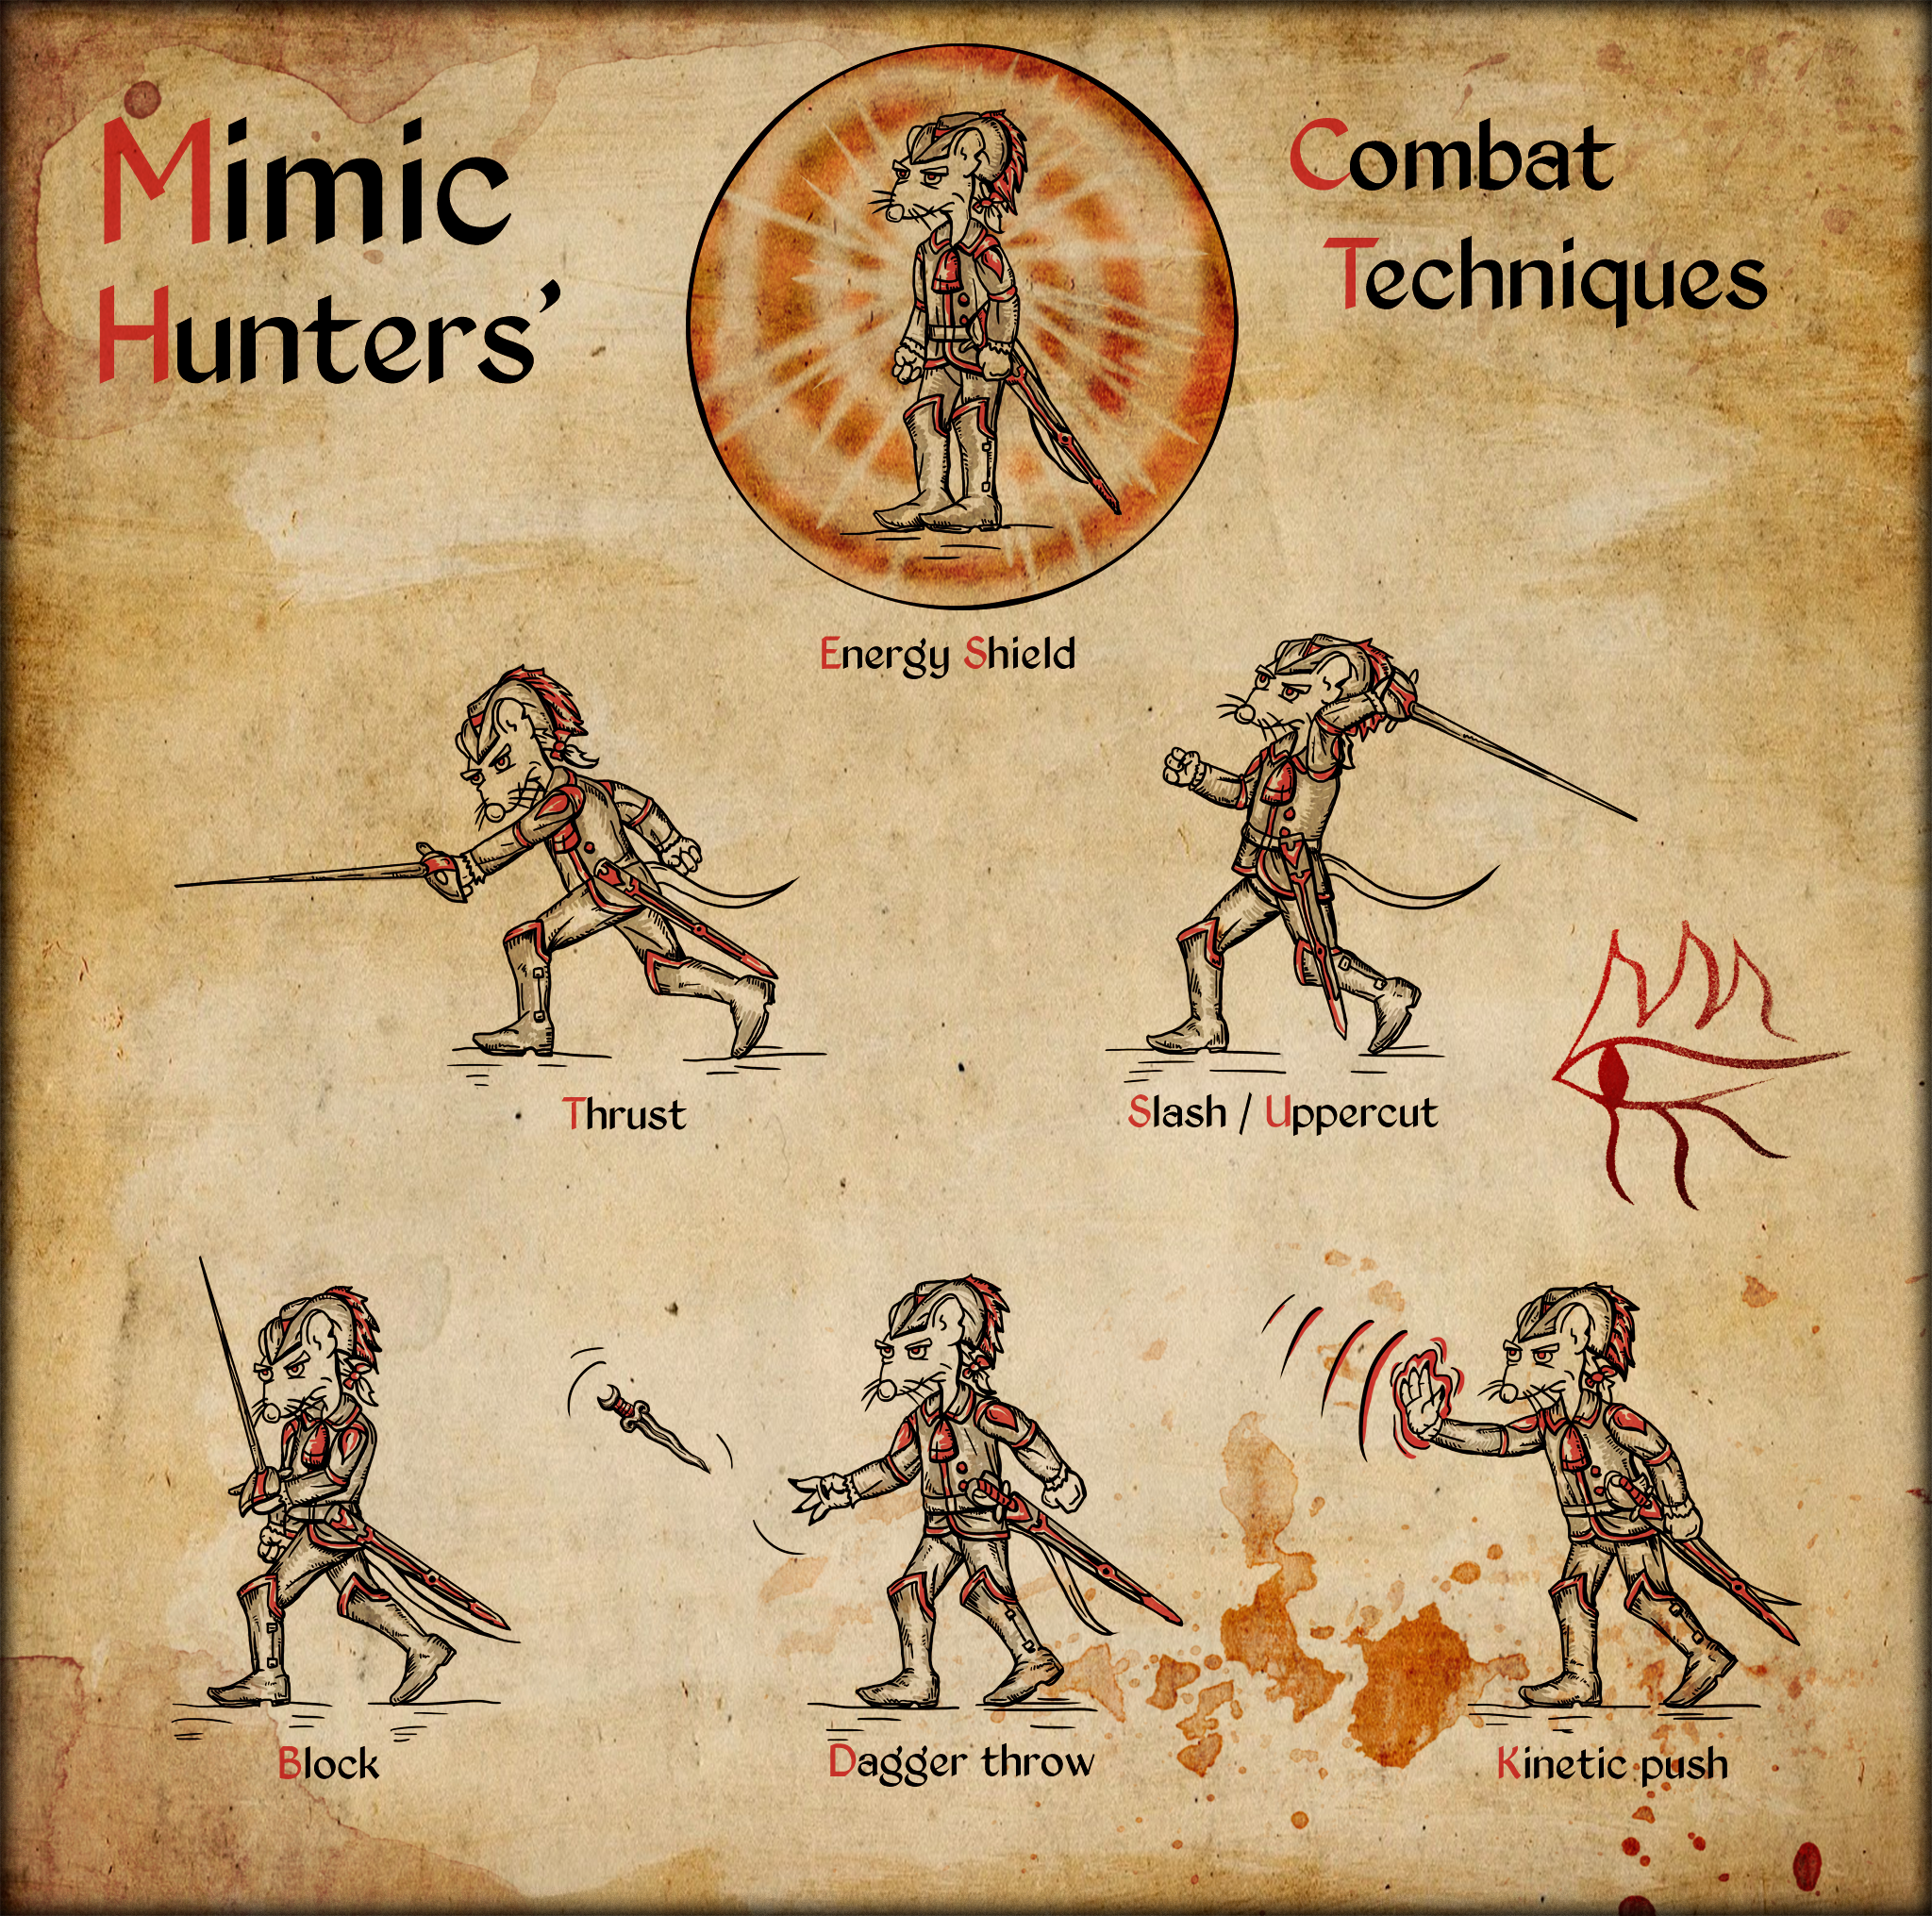 Mimic_Hunters_Combat_Techniques